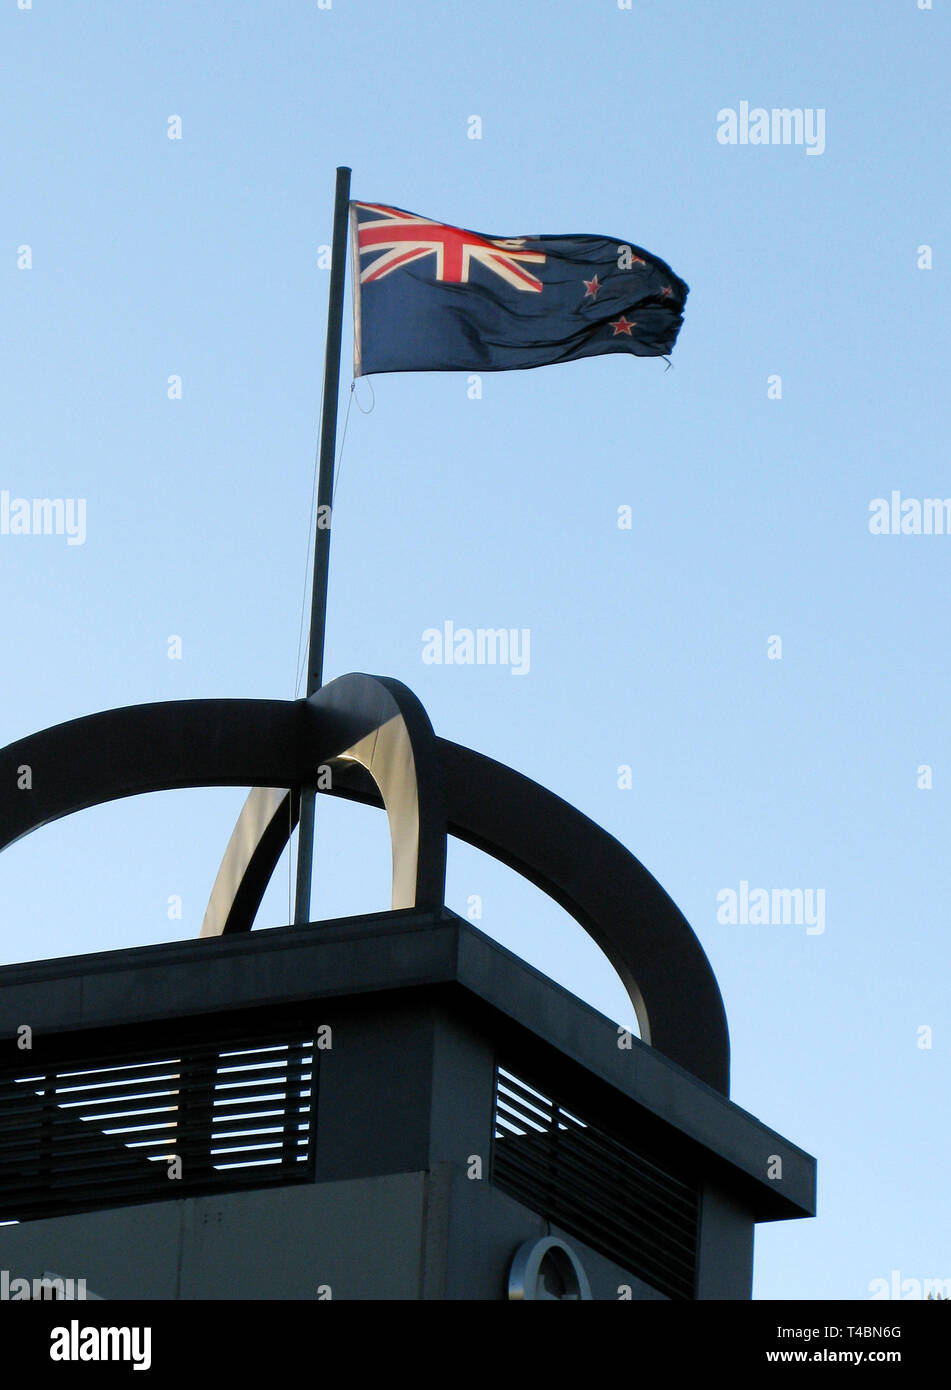 NEW ZEALAND flag on flagpole Stock Photo